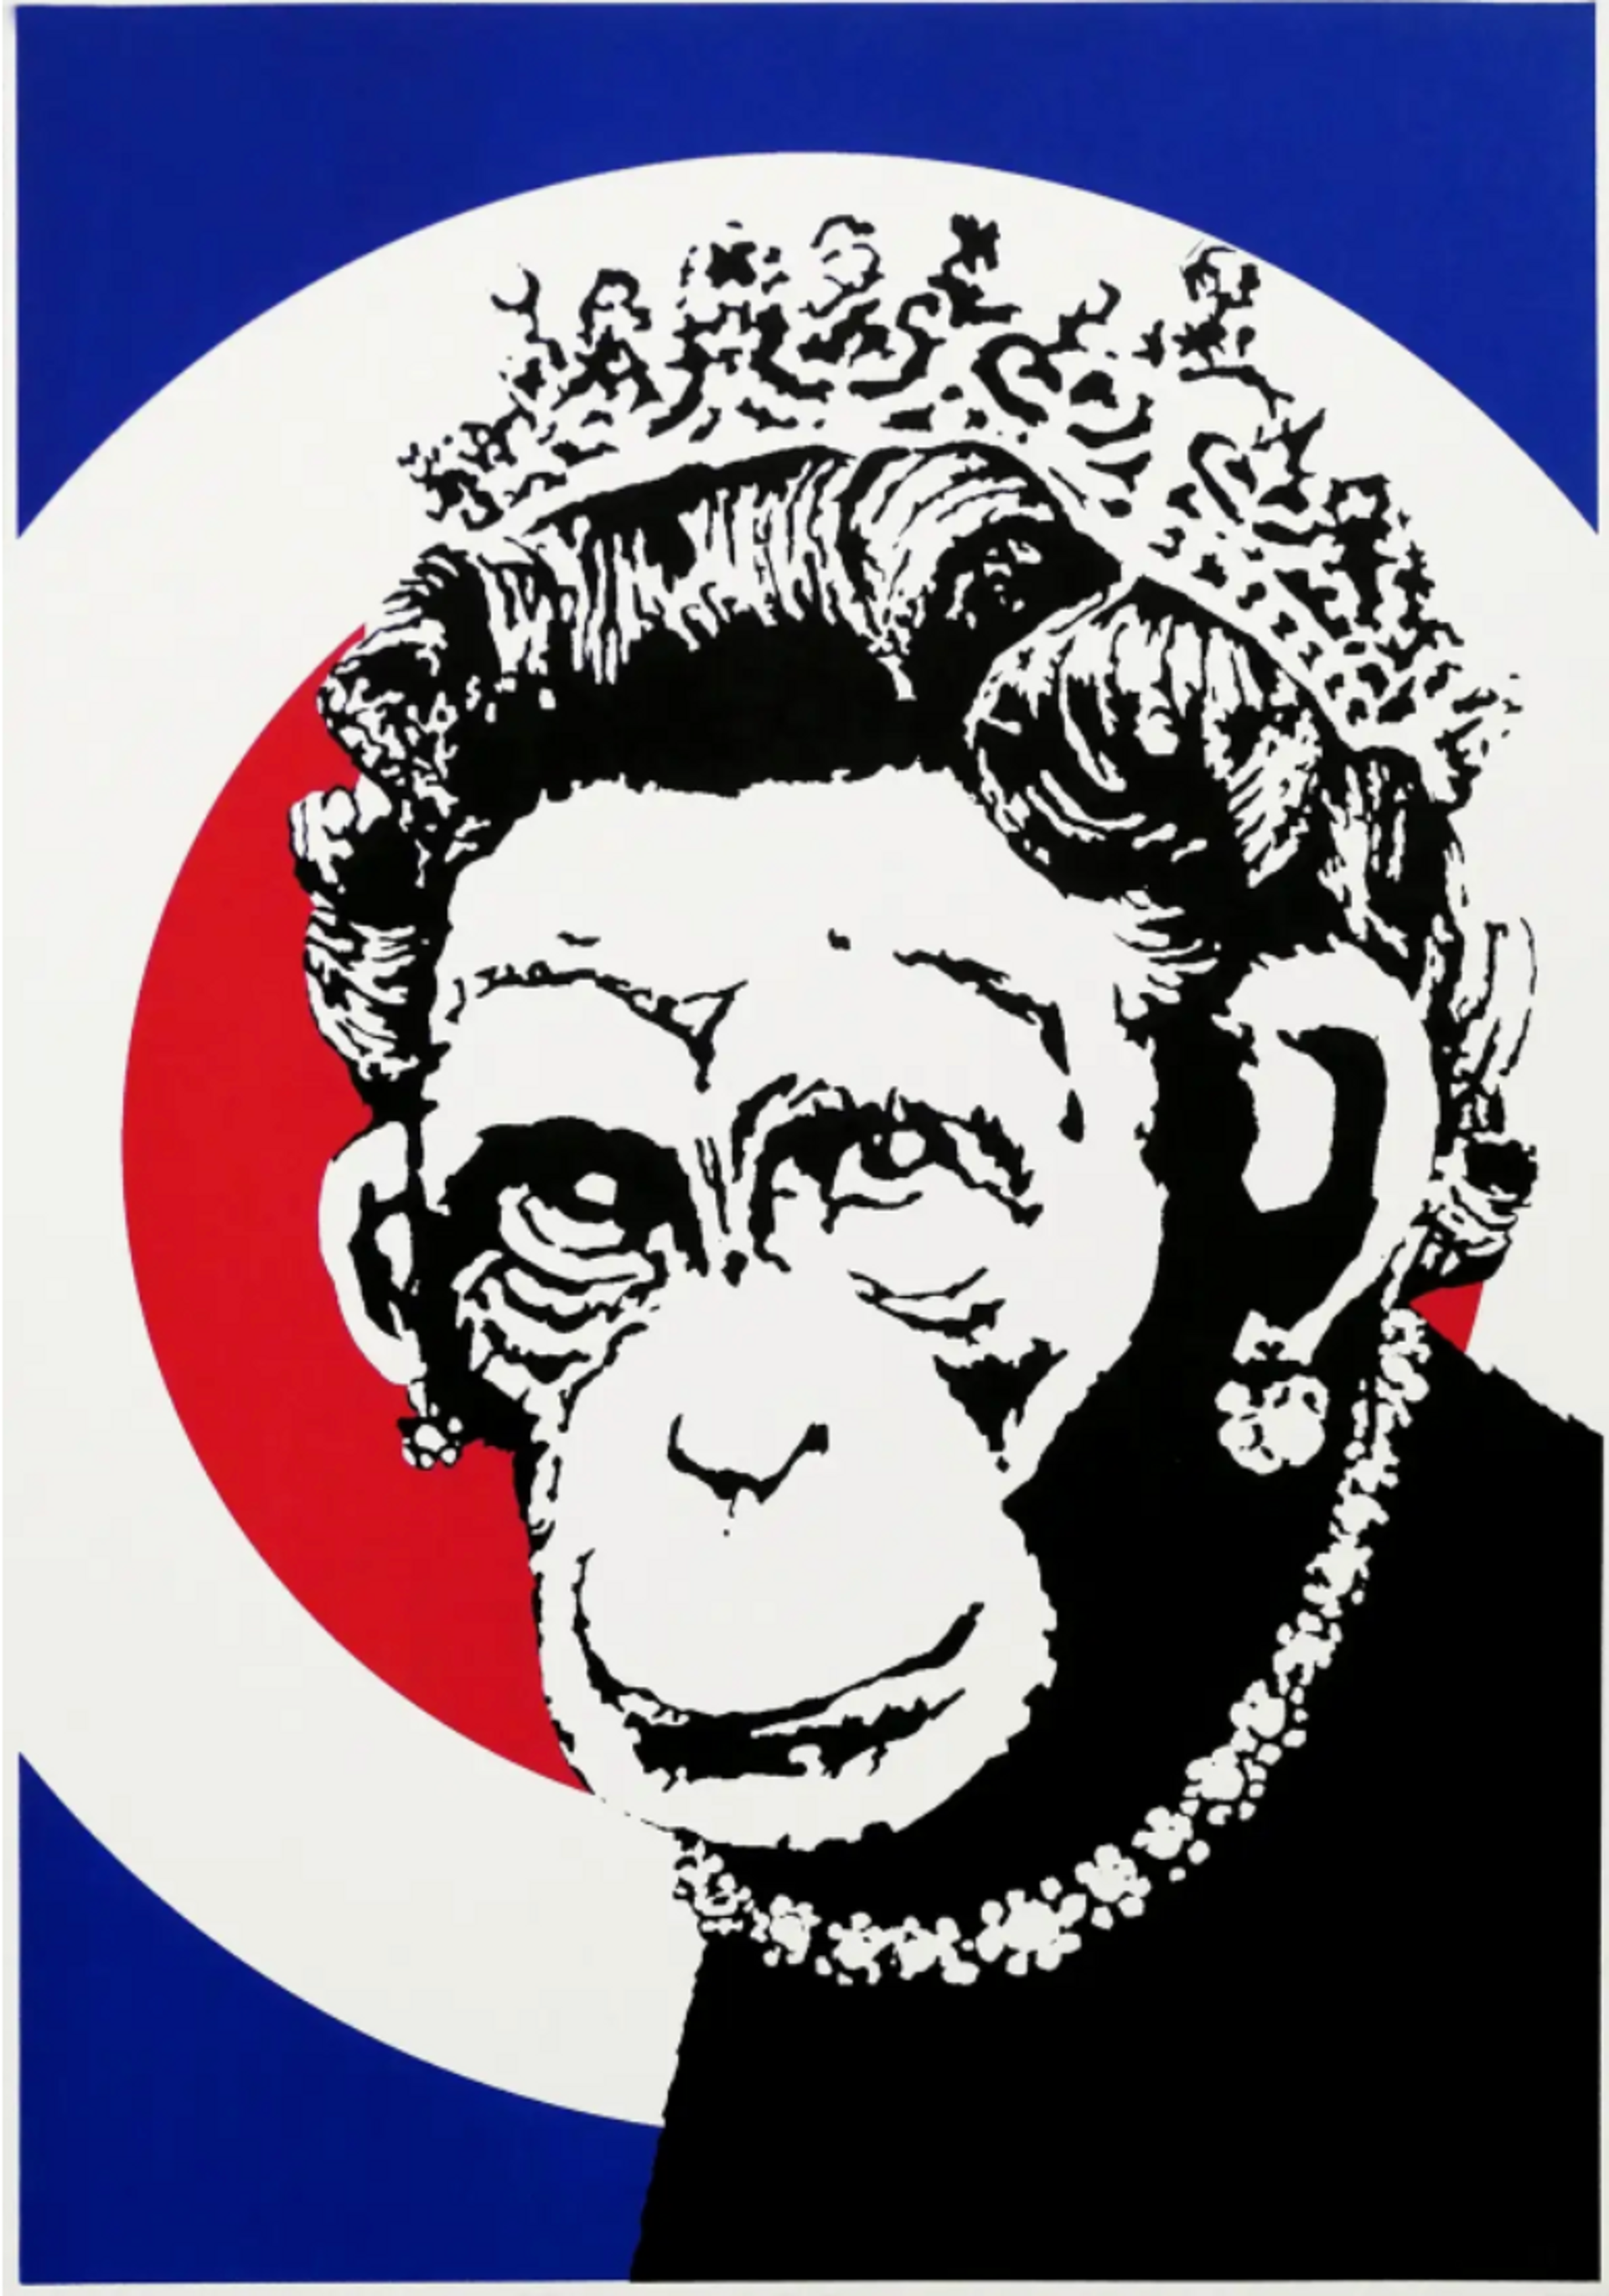 Monkey Queen by Banksy